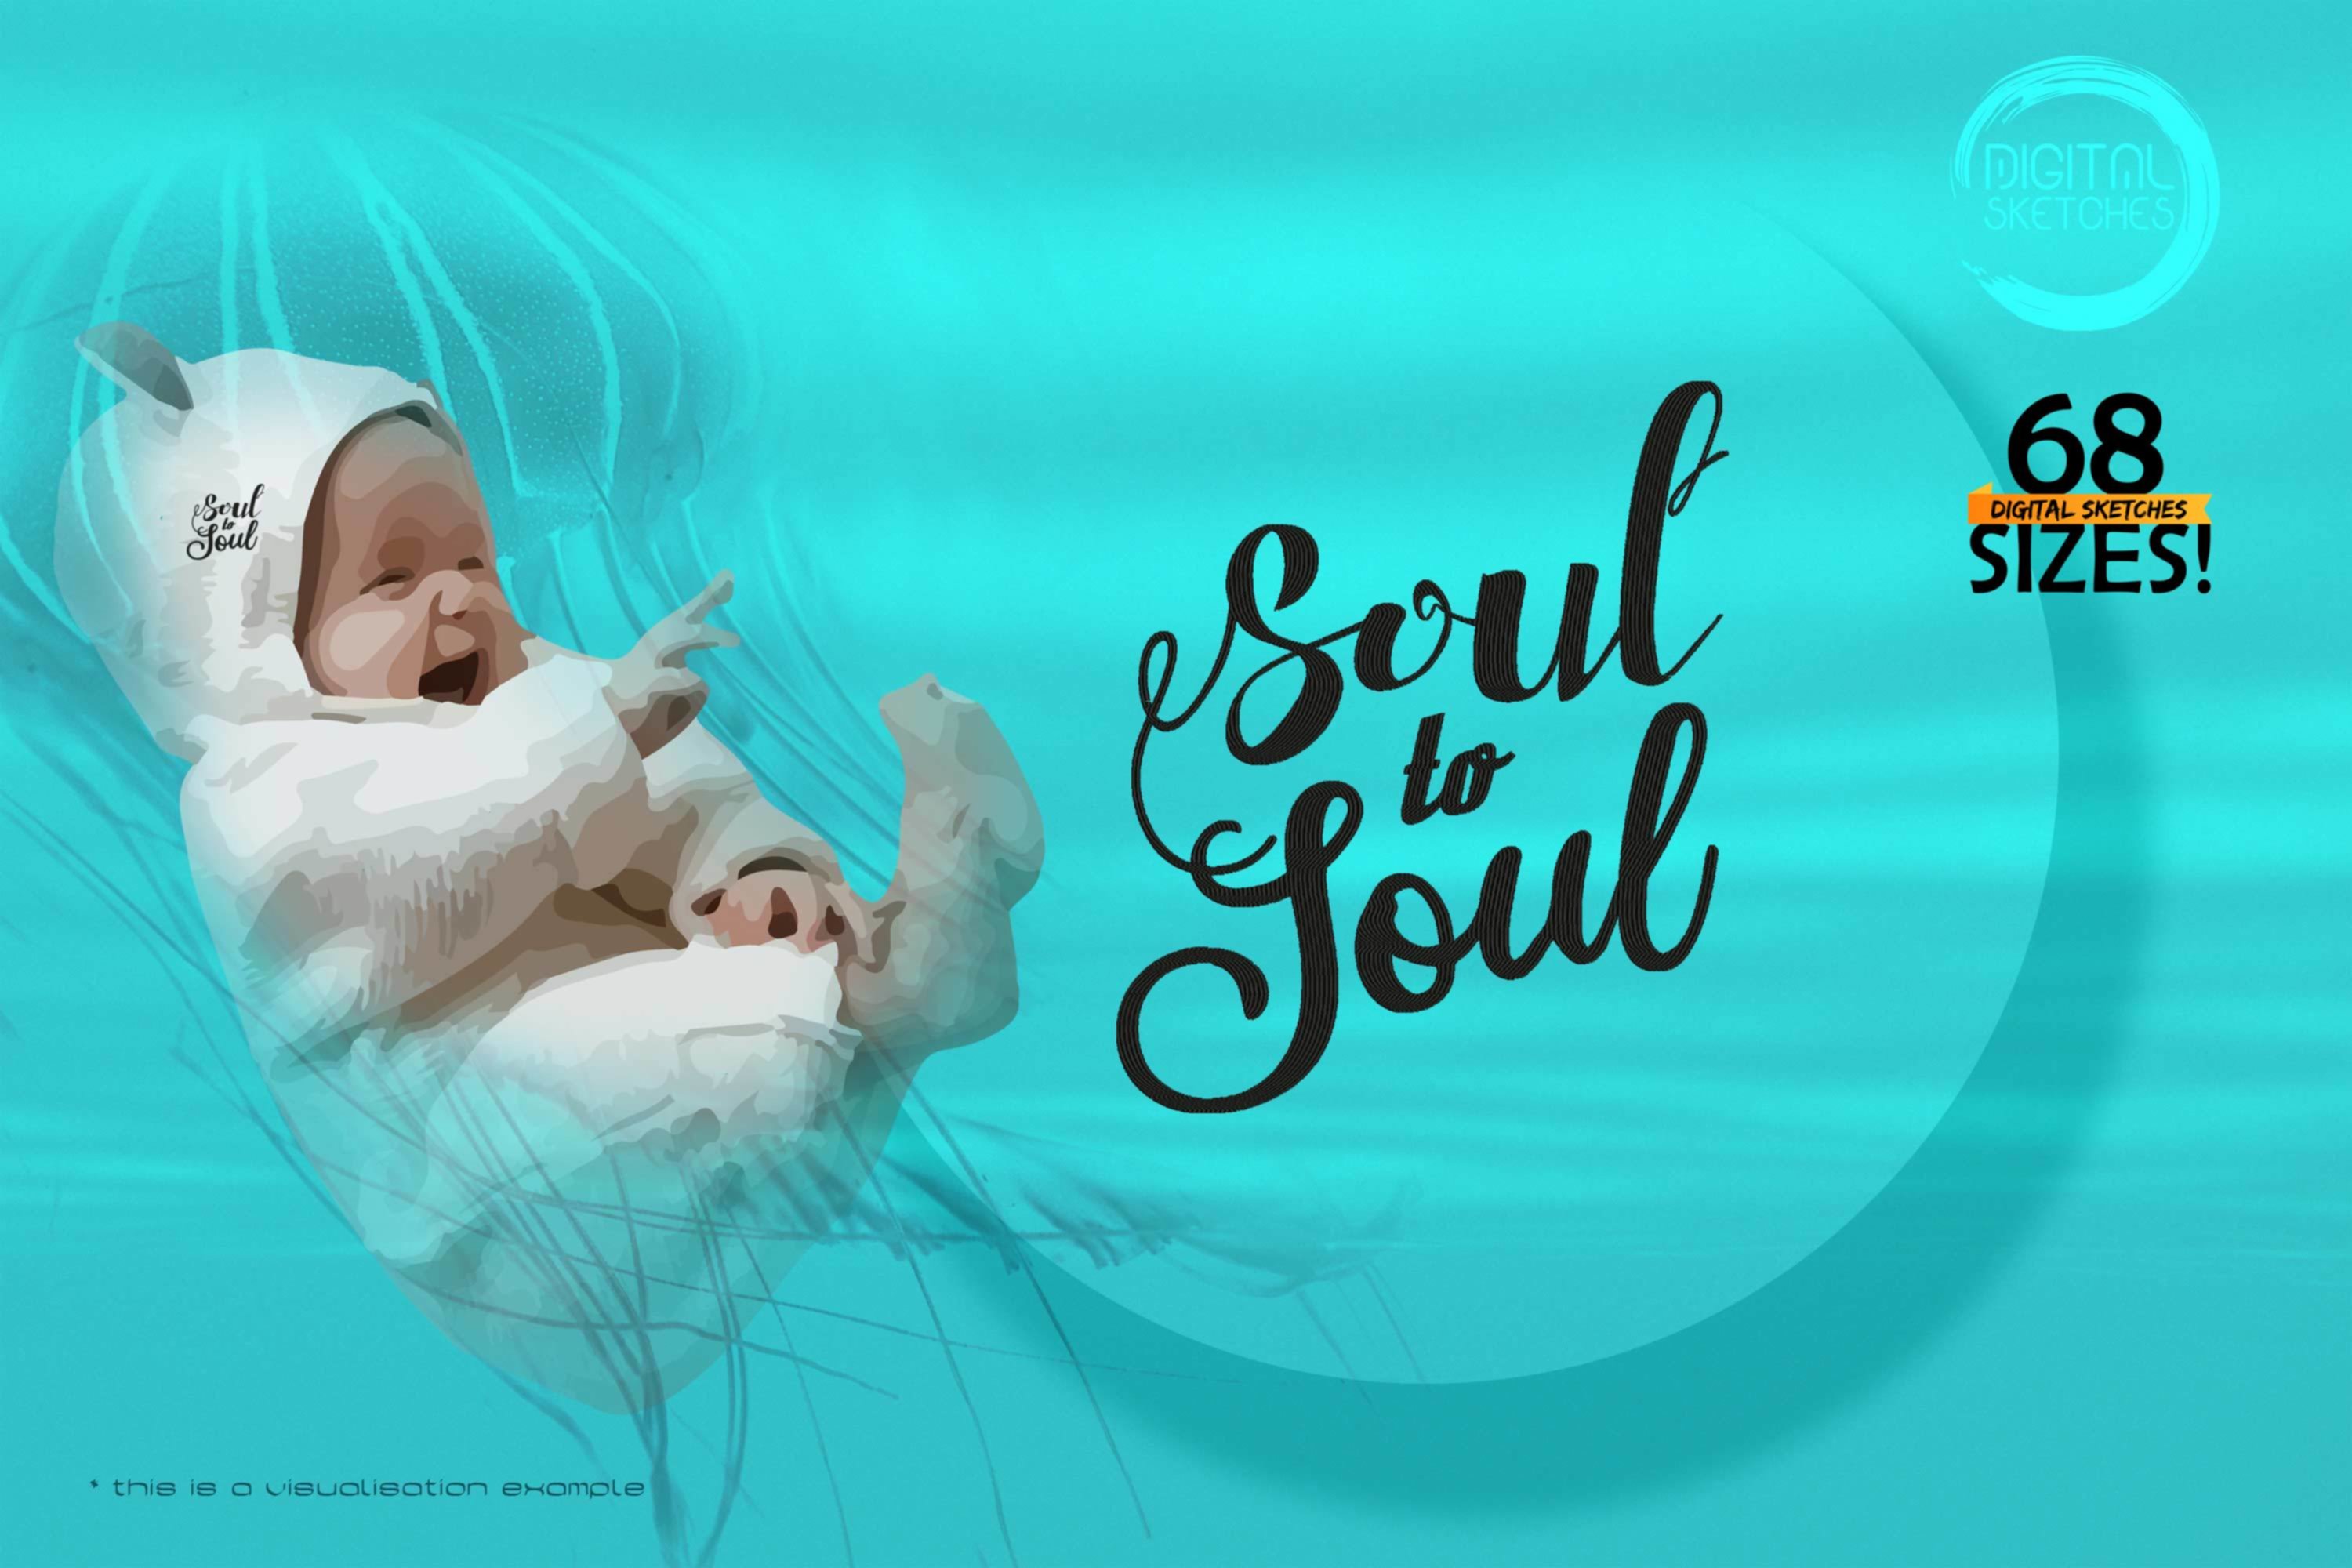 Soul To Soul